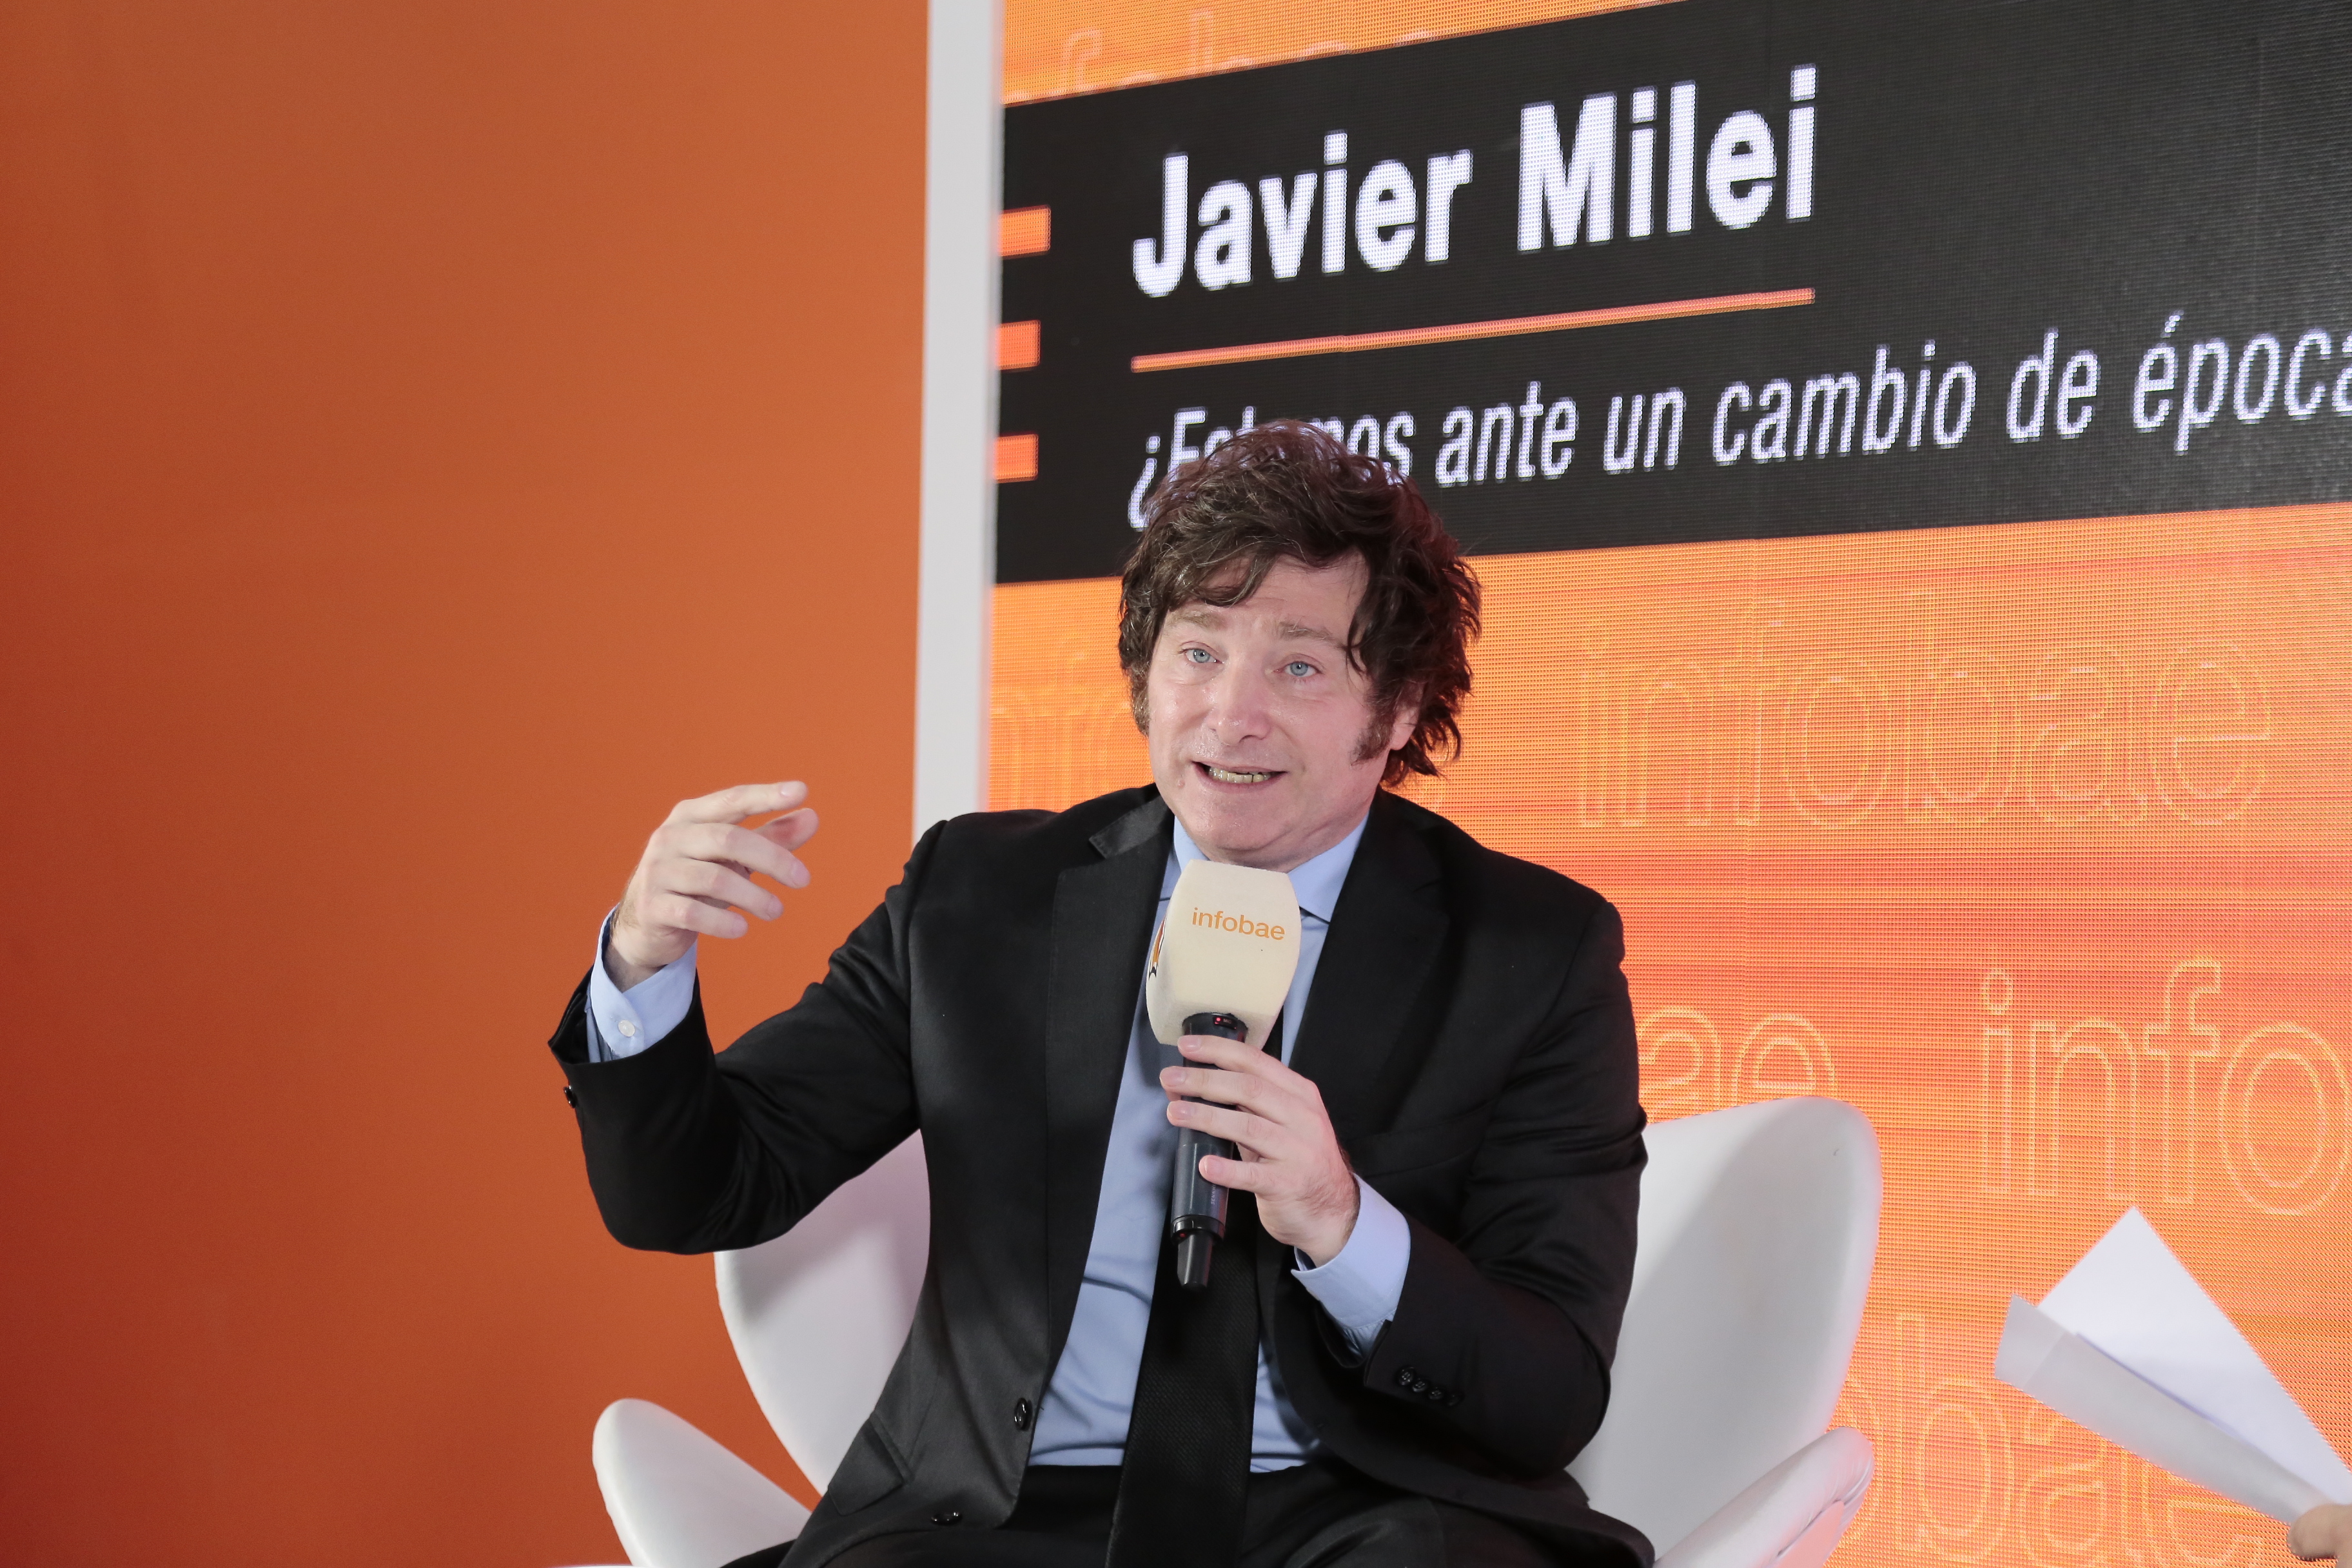 Javier Milei participó de la charla "¿Estamos ante un cambio de época?" en la Feria del Libro. (fotos Luciano González)